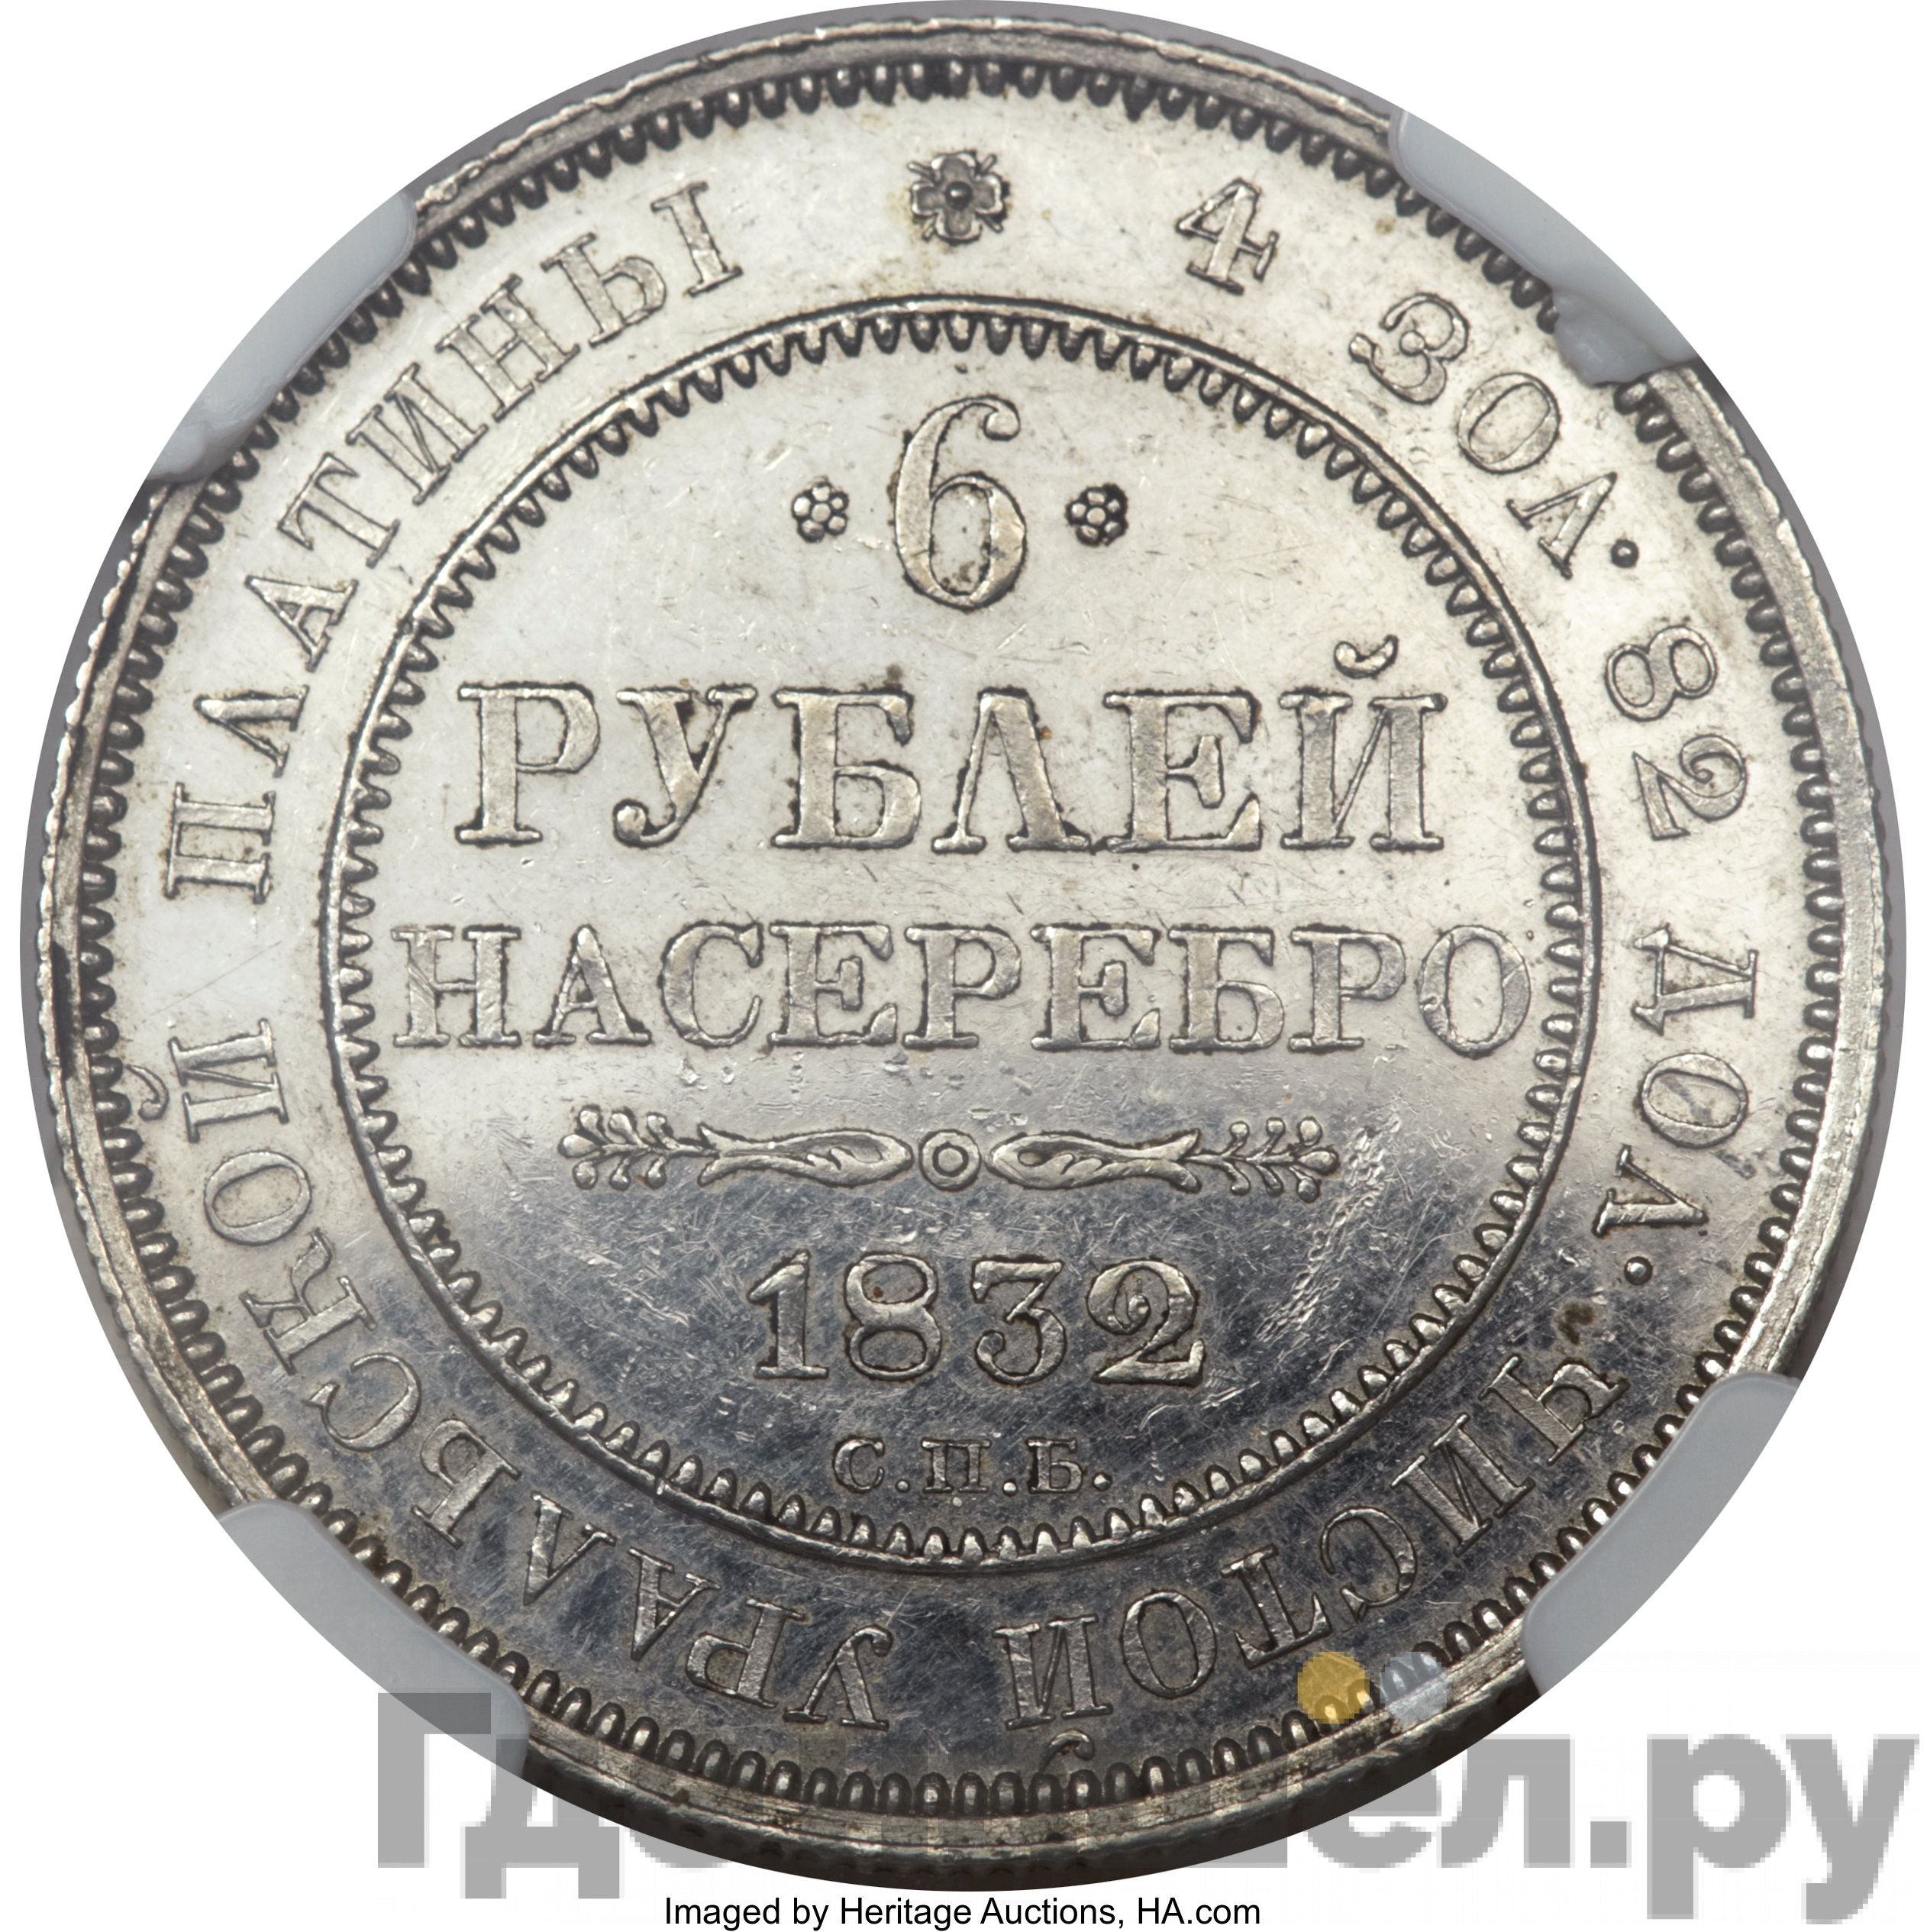 6 рублей 1832 года СПБ